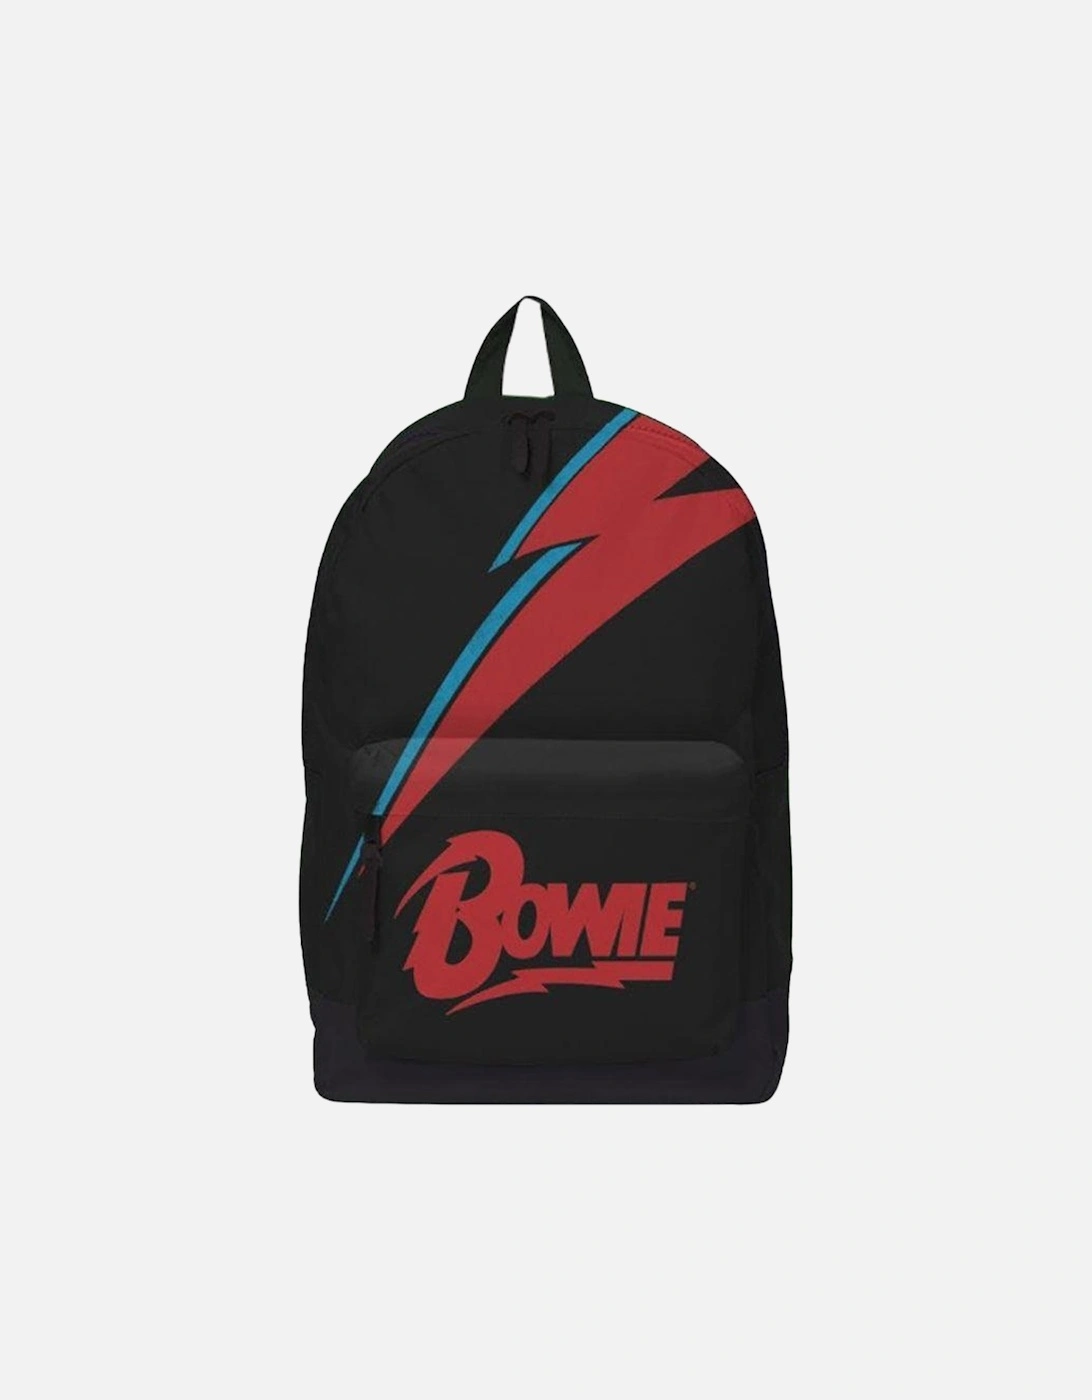 Lightning David Bowie Backpack, 2 of 1